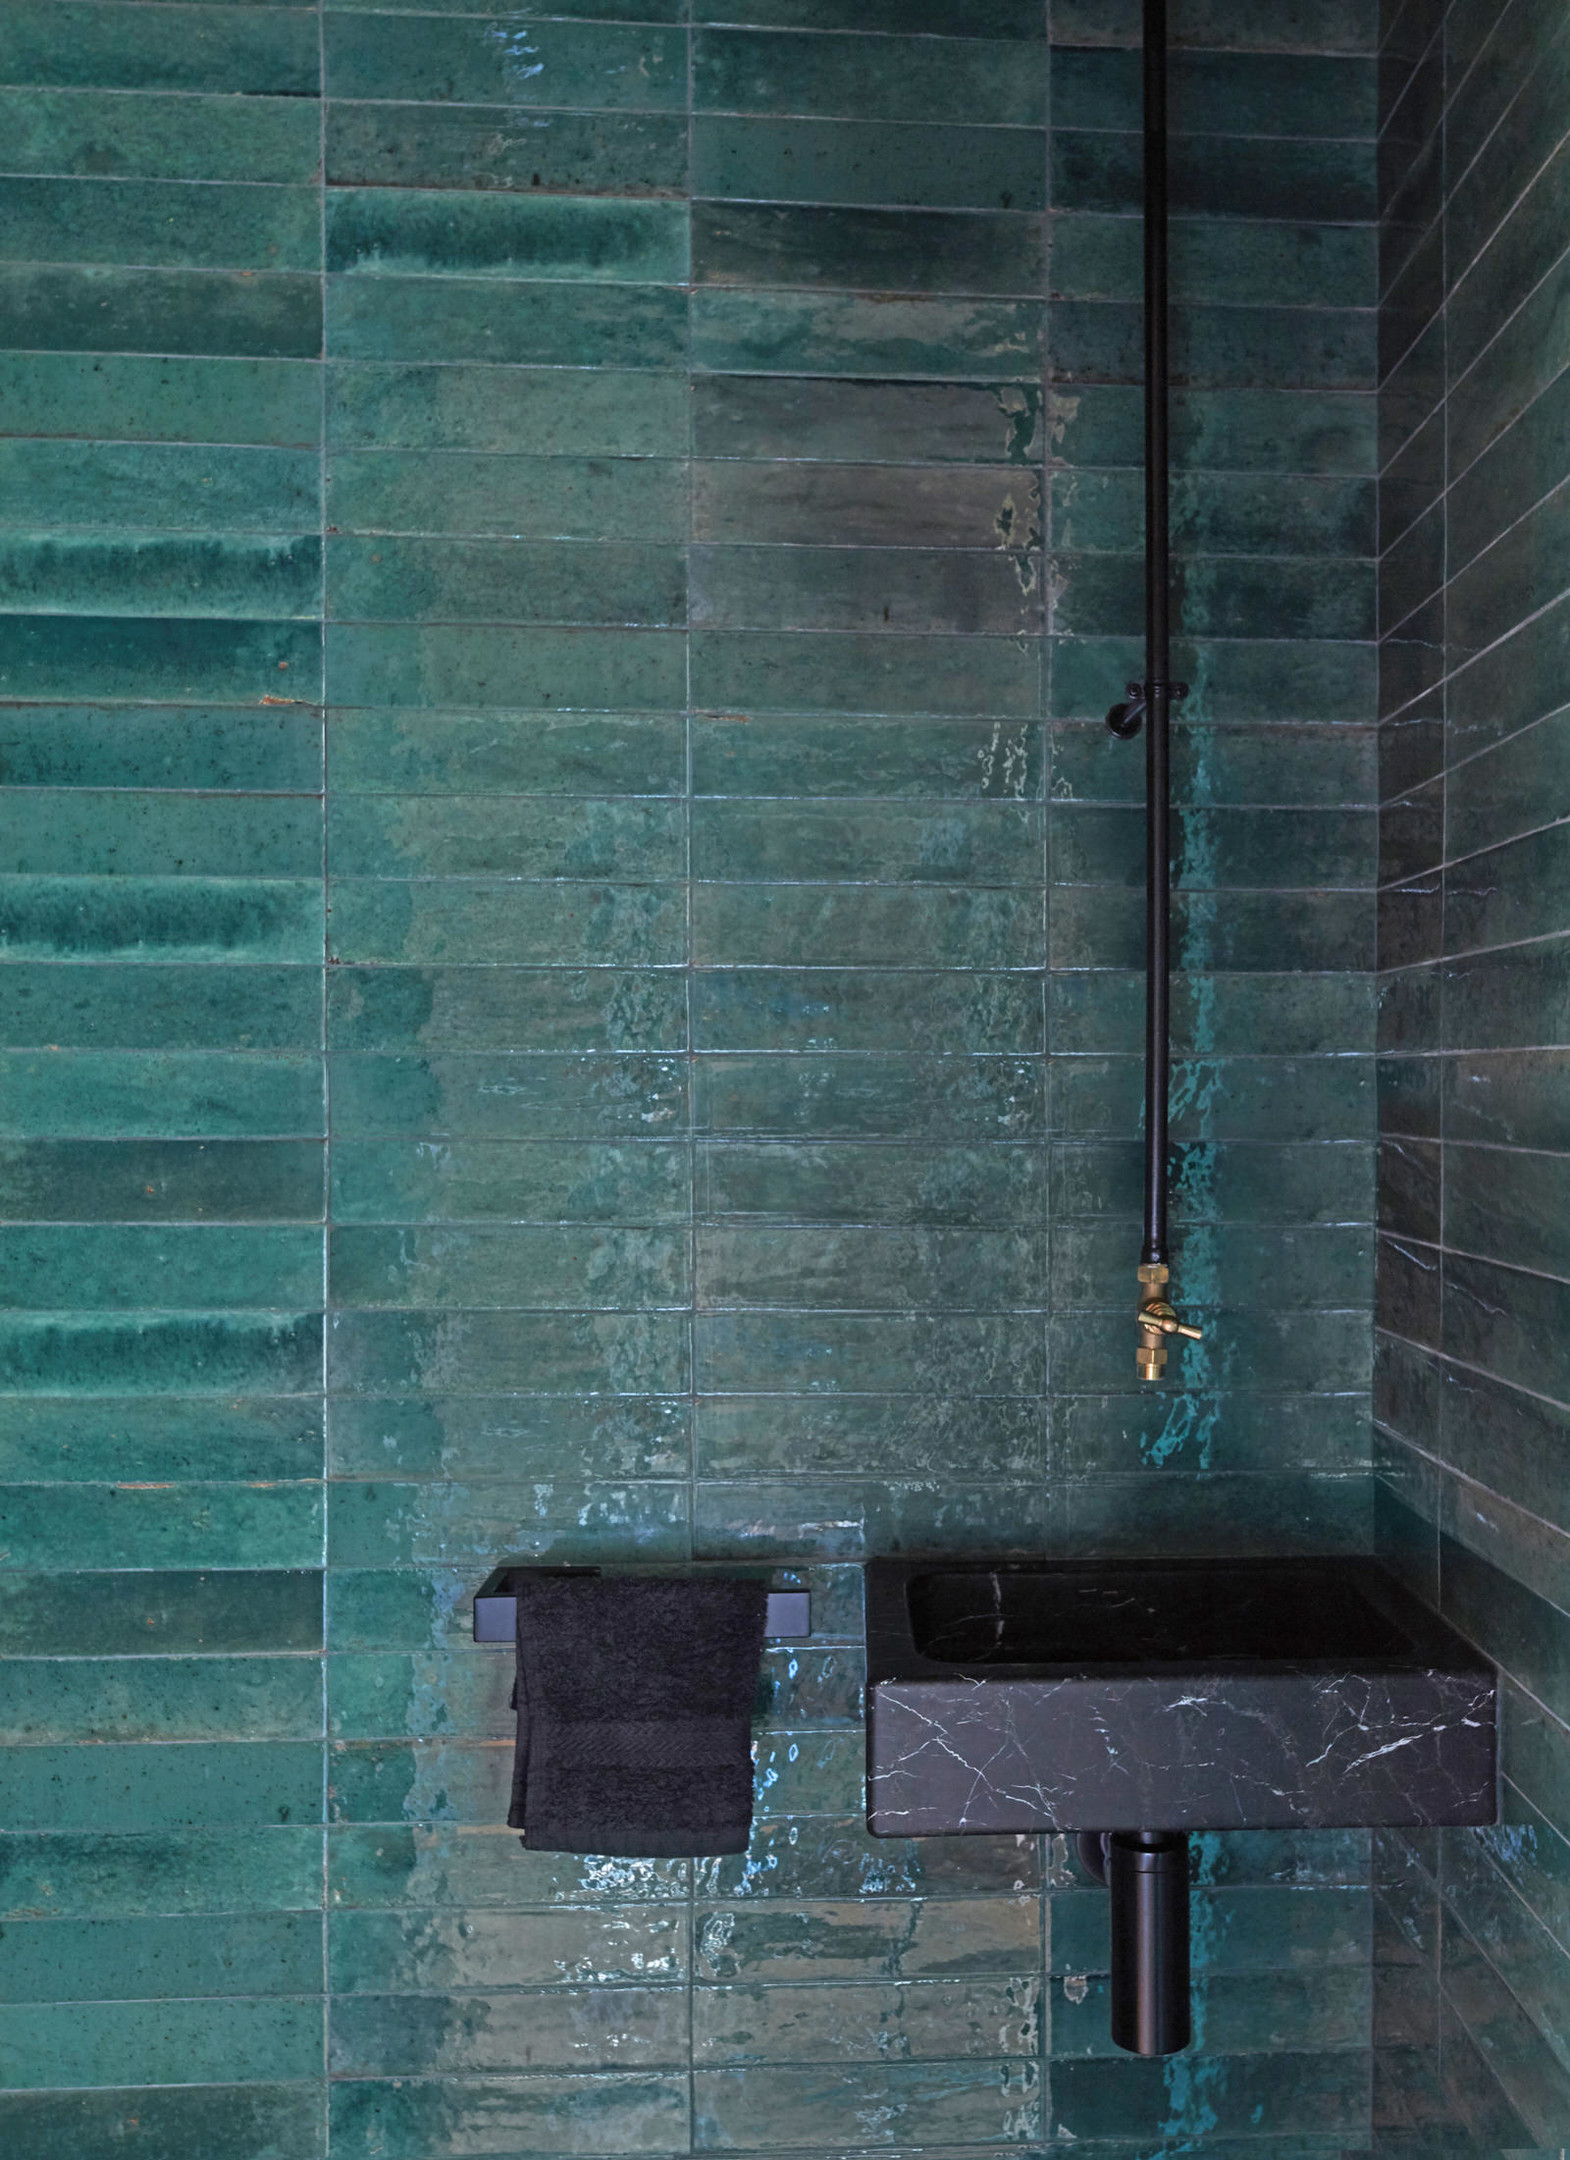 Khu vực bồn rửa tay được NTK lựa chọn ốp gạch màu xanh ngọc lục bảo kết hợp nội thất đen tuyền cho vẻ đẹp vừa thời trang vừa sang chảnh. Kiểu gạch thẻ ngang cũng phần nào giúp 'nới rộng' chiều dài cho không gian nhỏ.